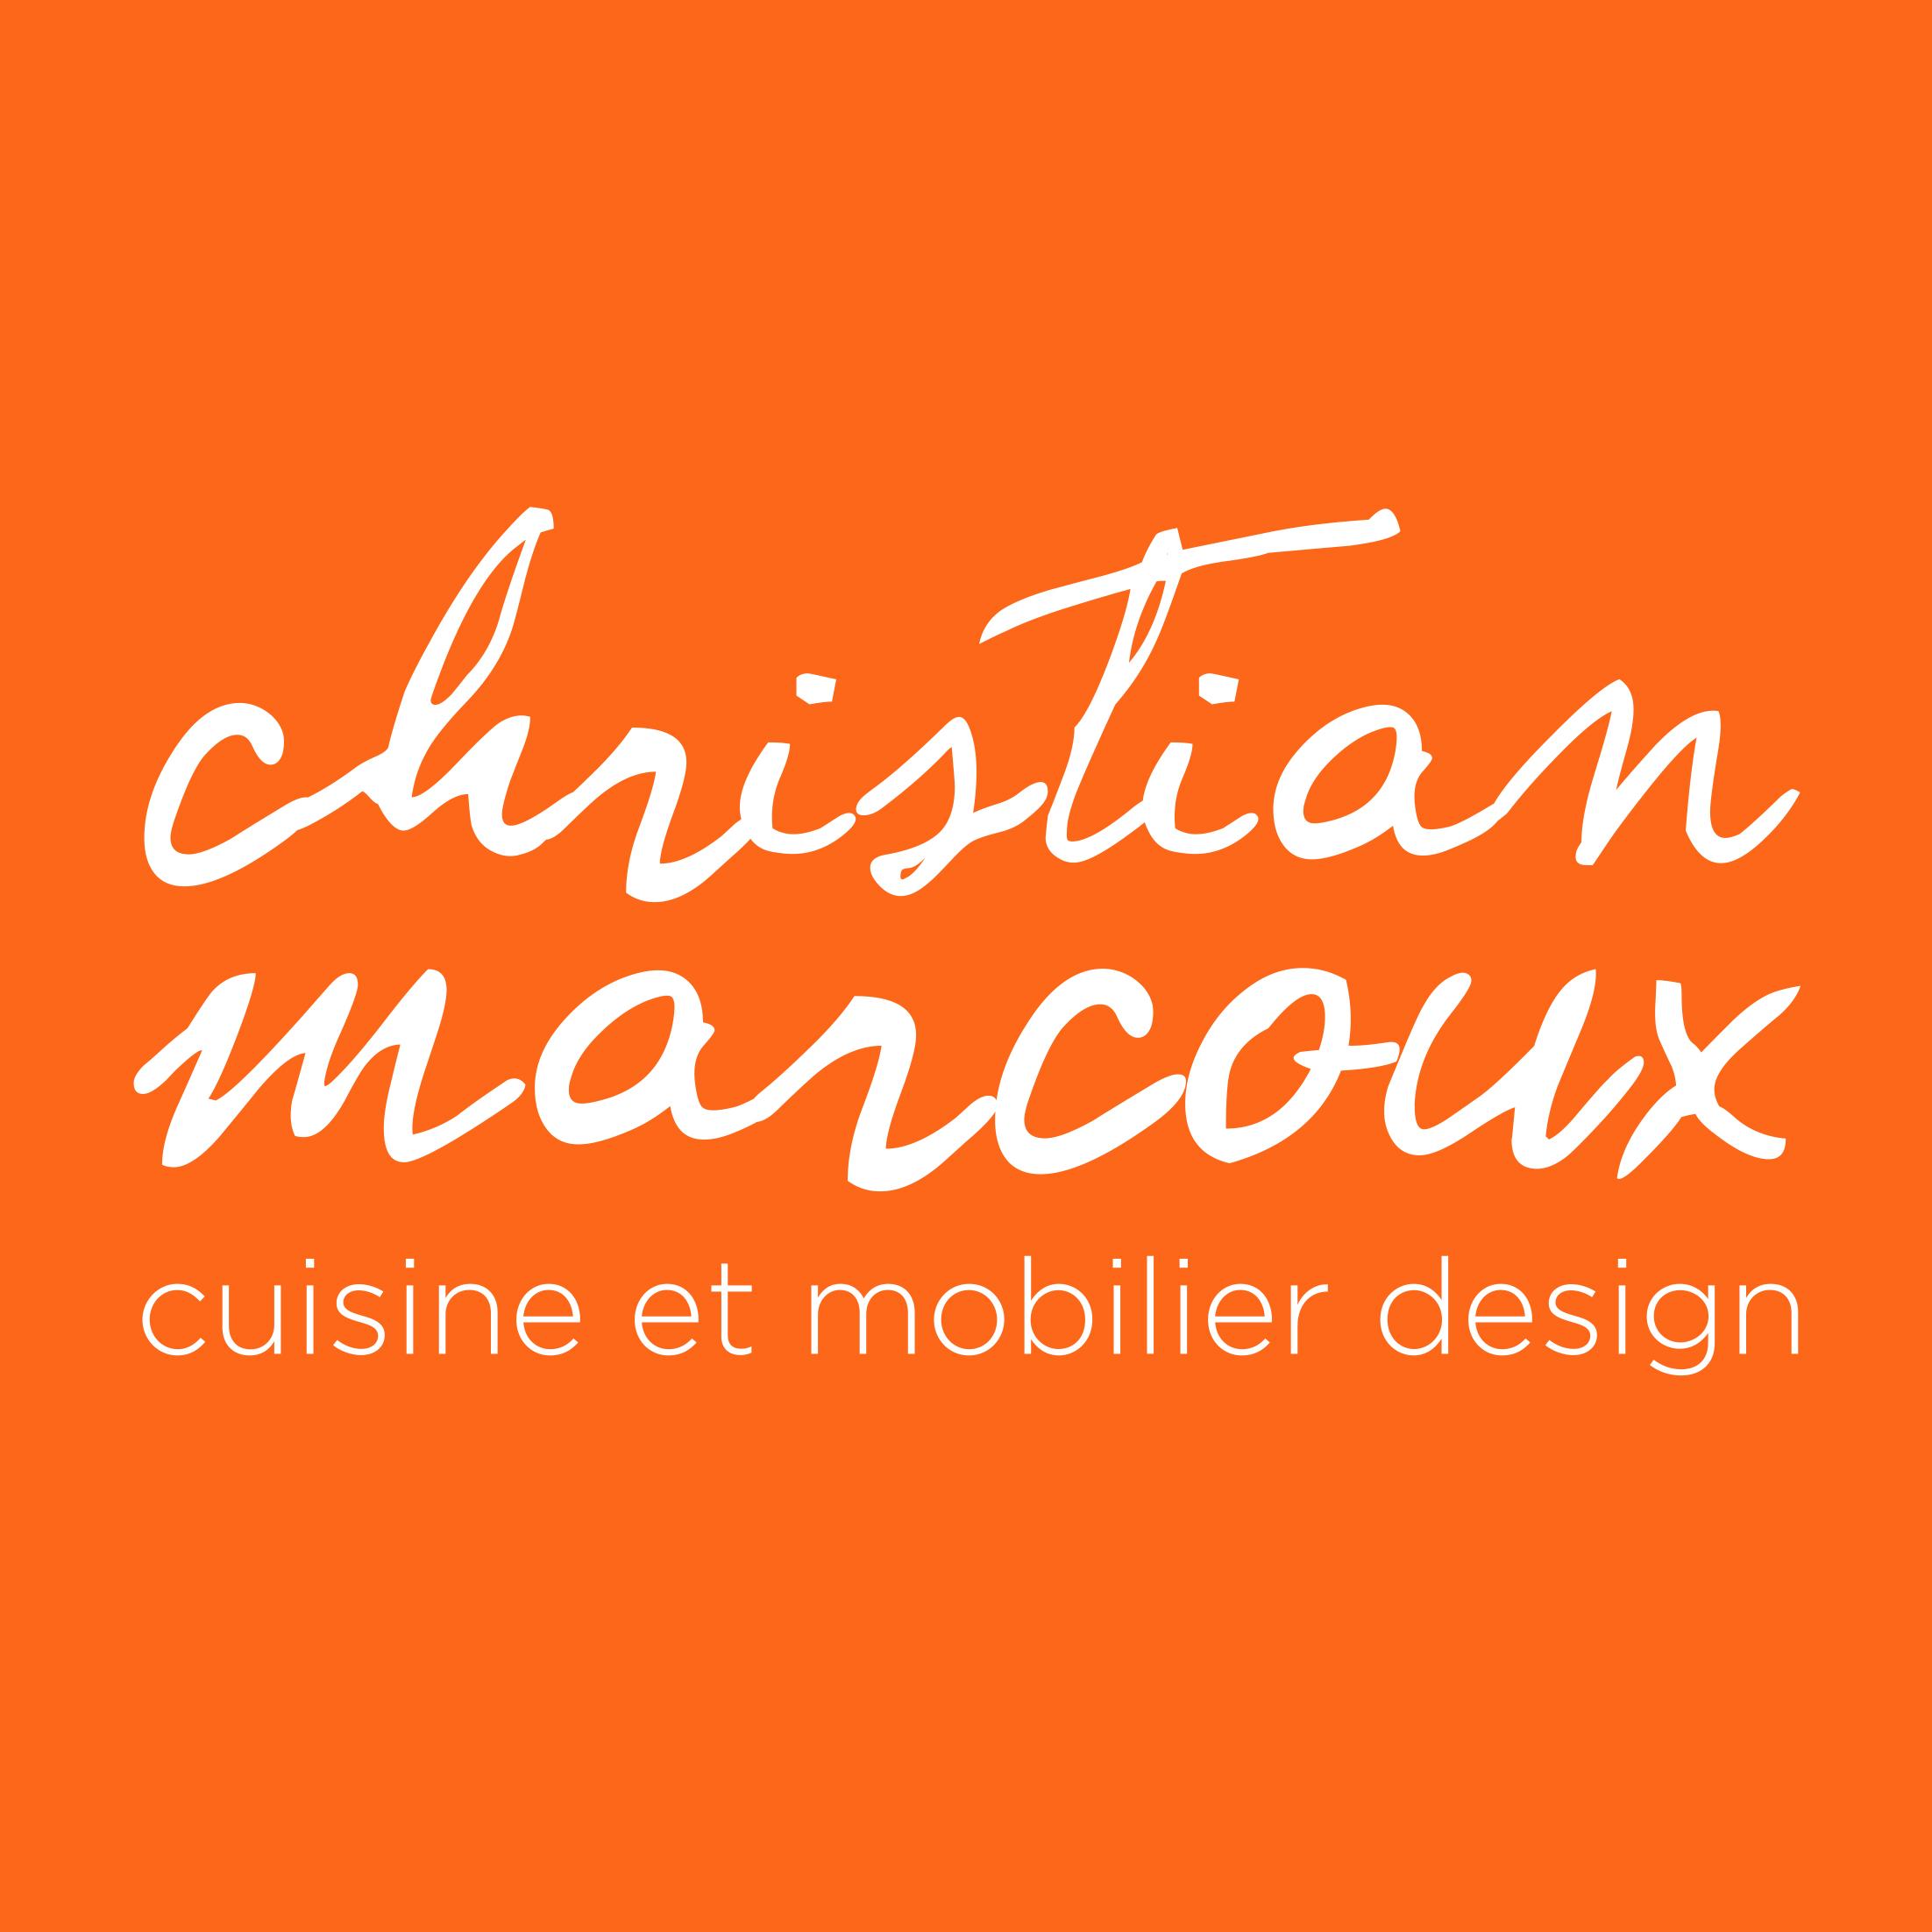 Christian Marcoux cuisine et mobilier design inc